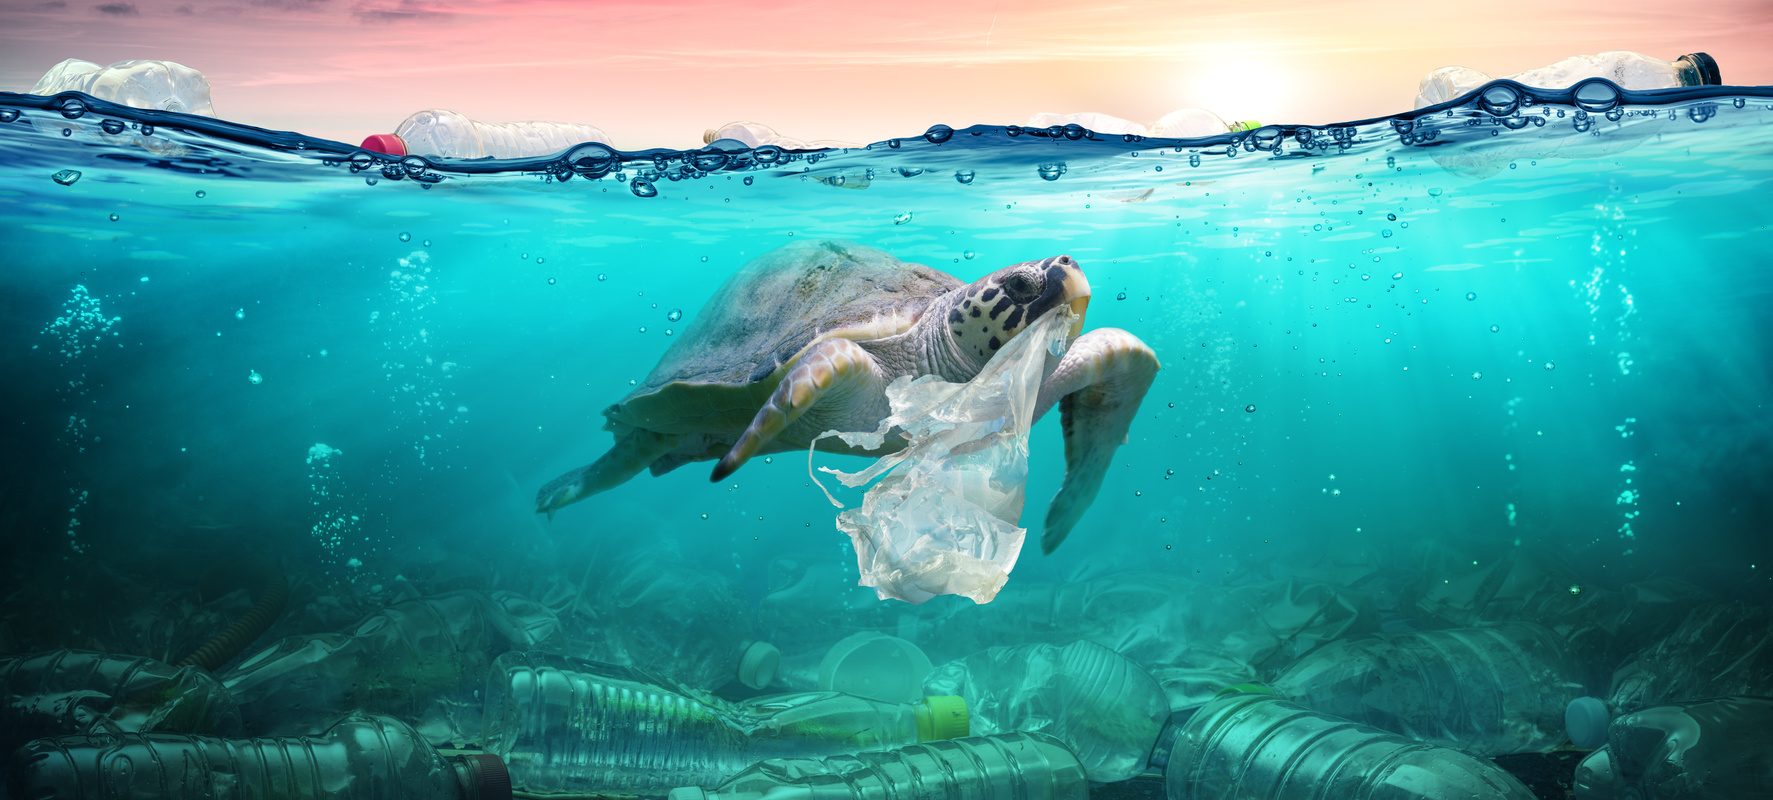 Zero waste - jak zużywać mniej plastiku? Żółw w oceanie chwyta pyszczkiem plastikową torebkę.